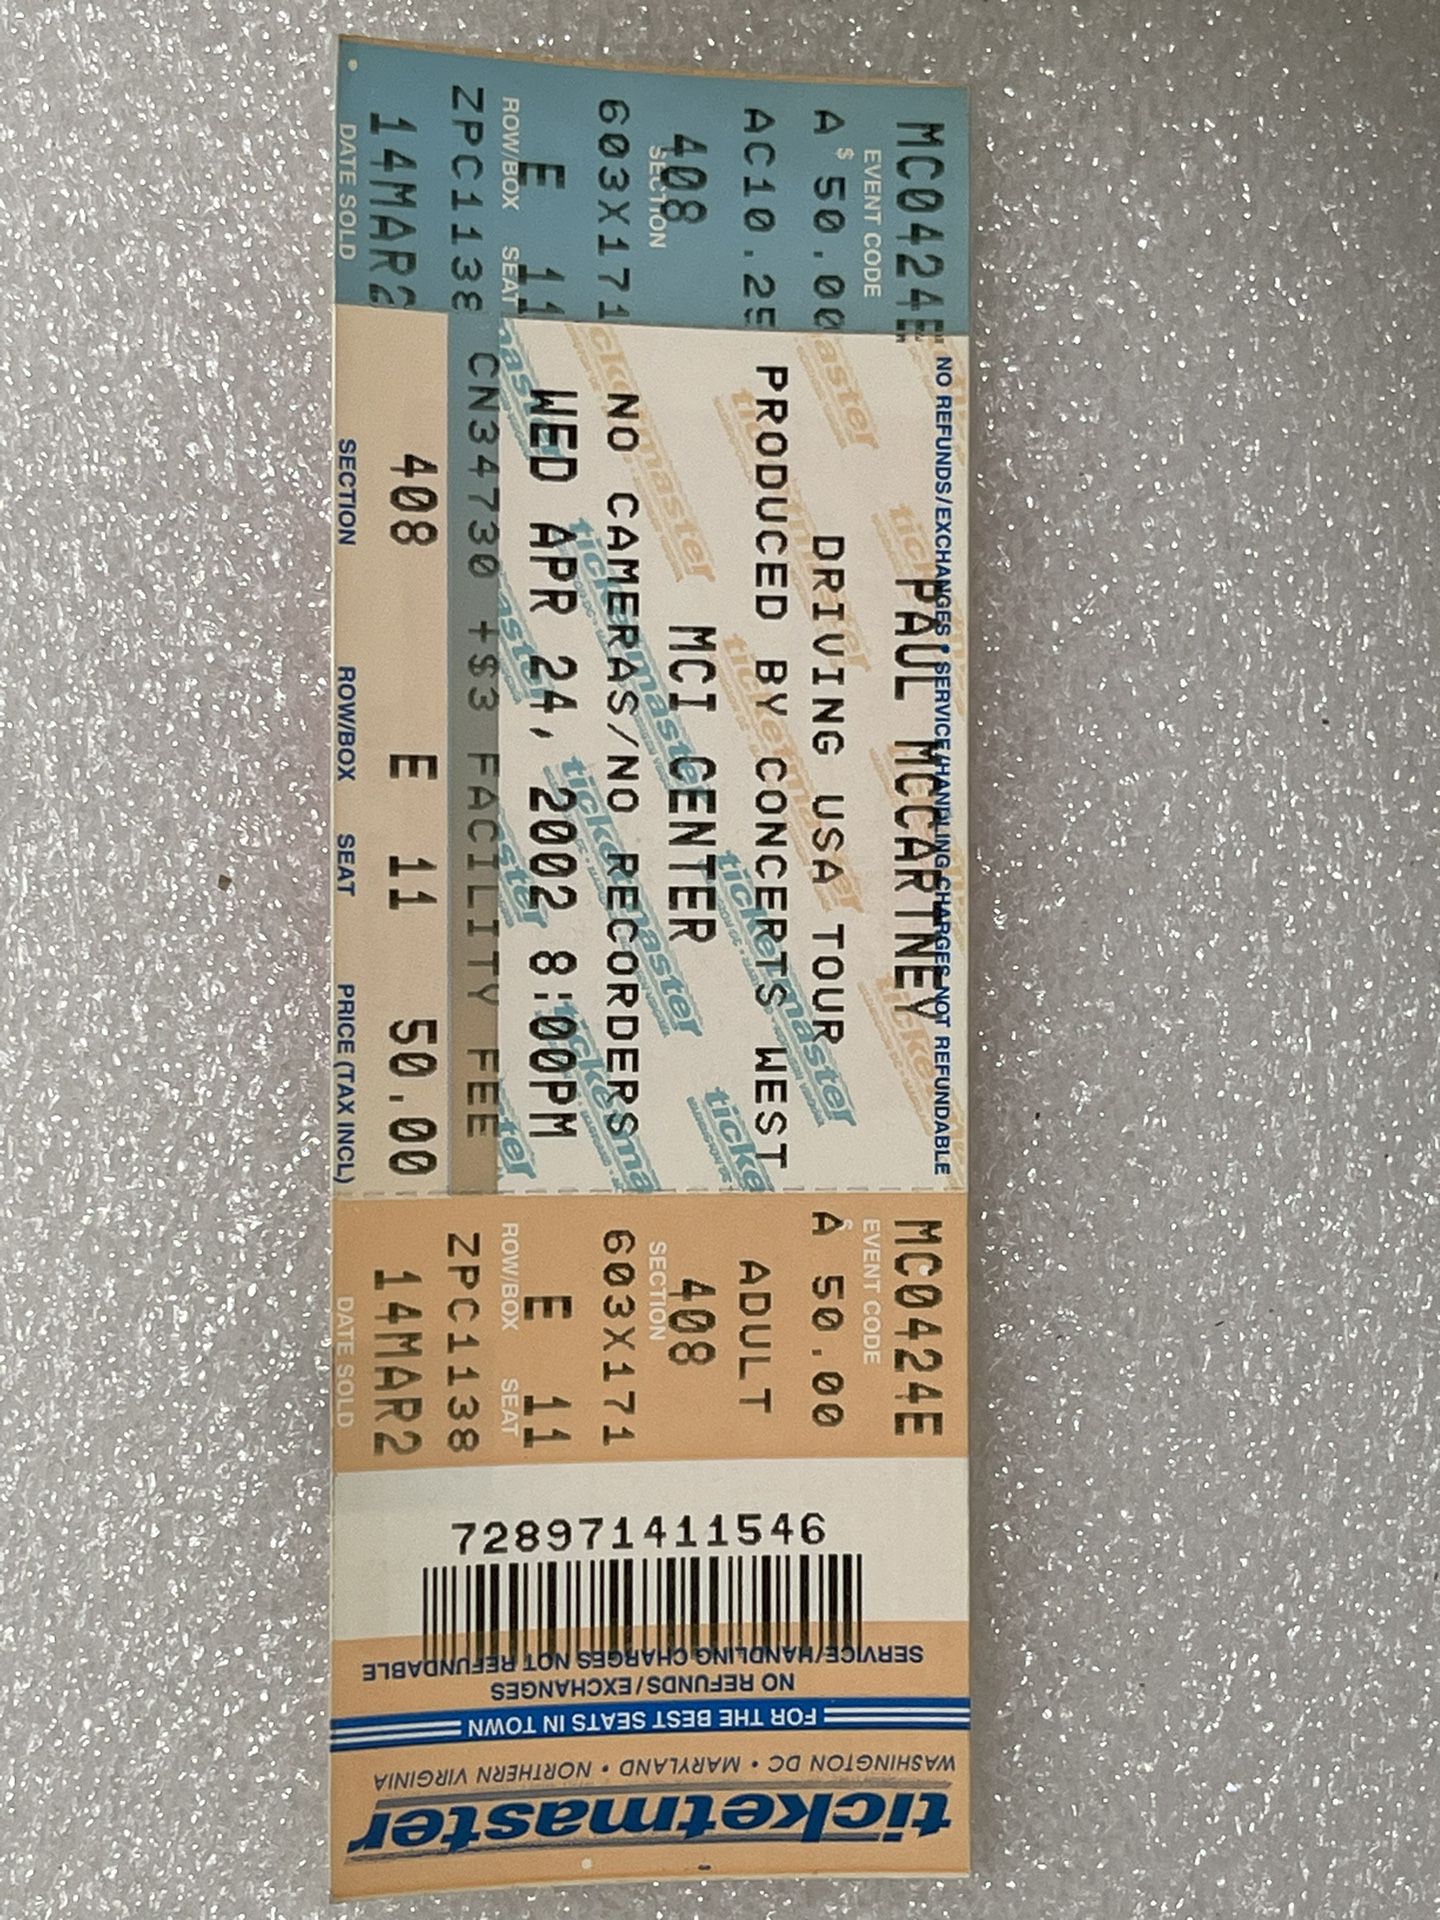 Paul McCartney Unused Concert Ticket MCI Center 2002